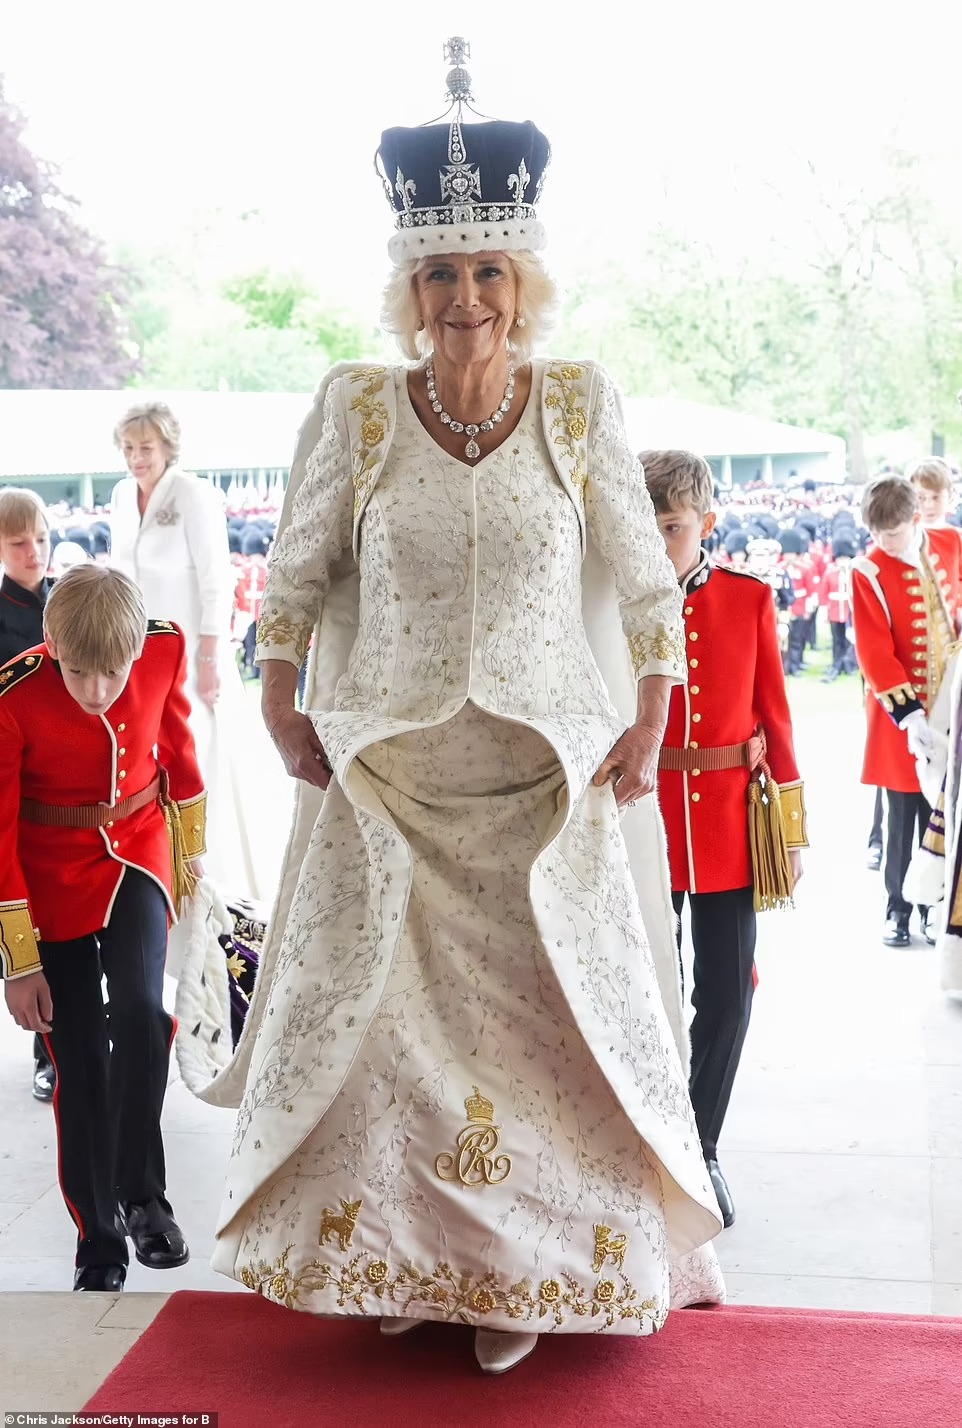 Chùm ảnh hậu trường hiếm hoi của Vua Charles và Vương hậu Camilla trên ban công Cung điện Buckingham, những góc nhìn chưa từng thấy - Ảnh 5.